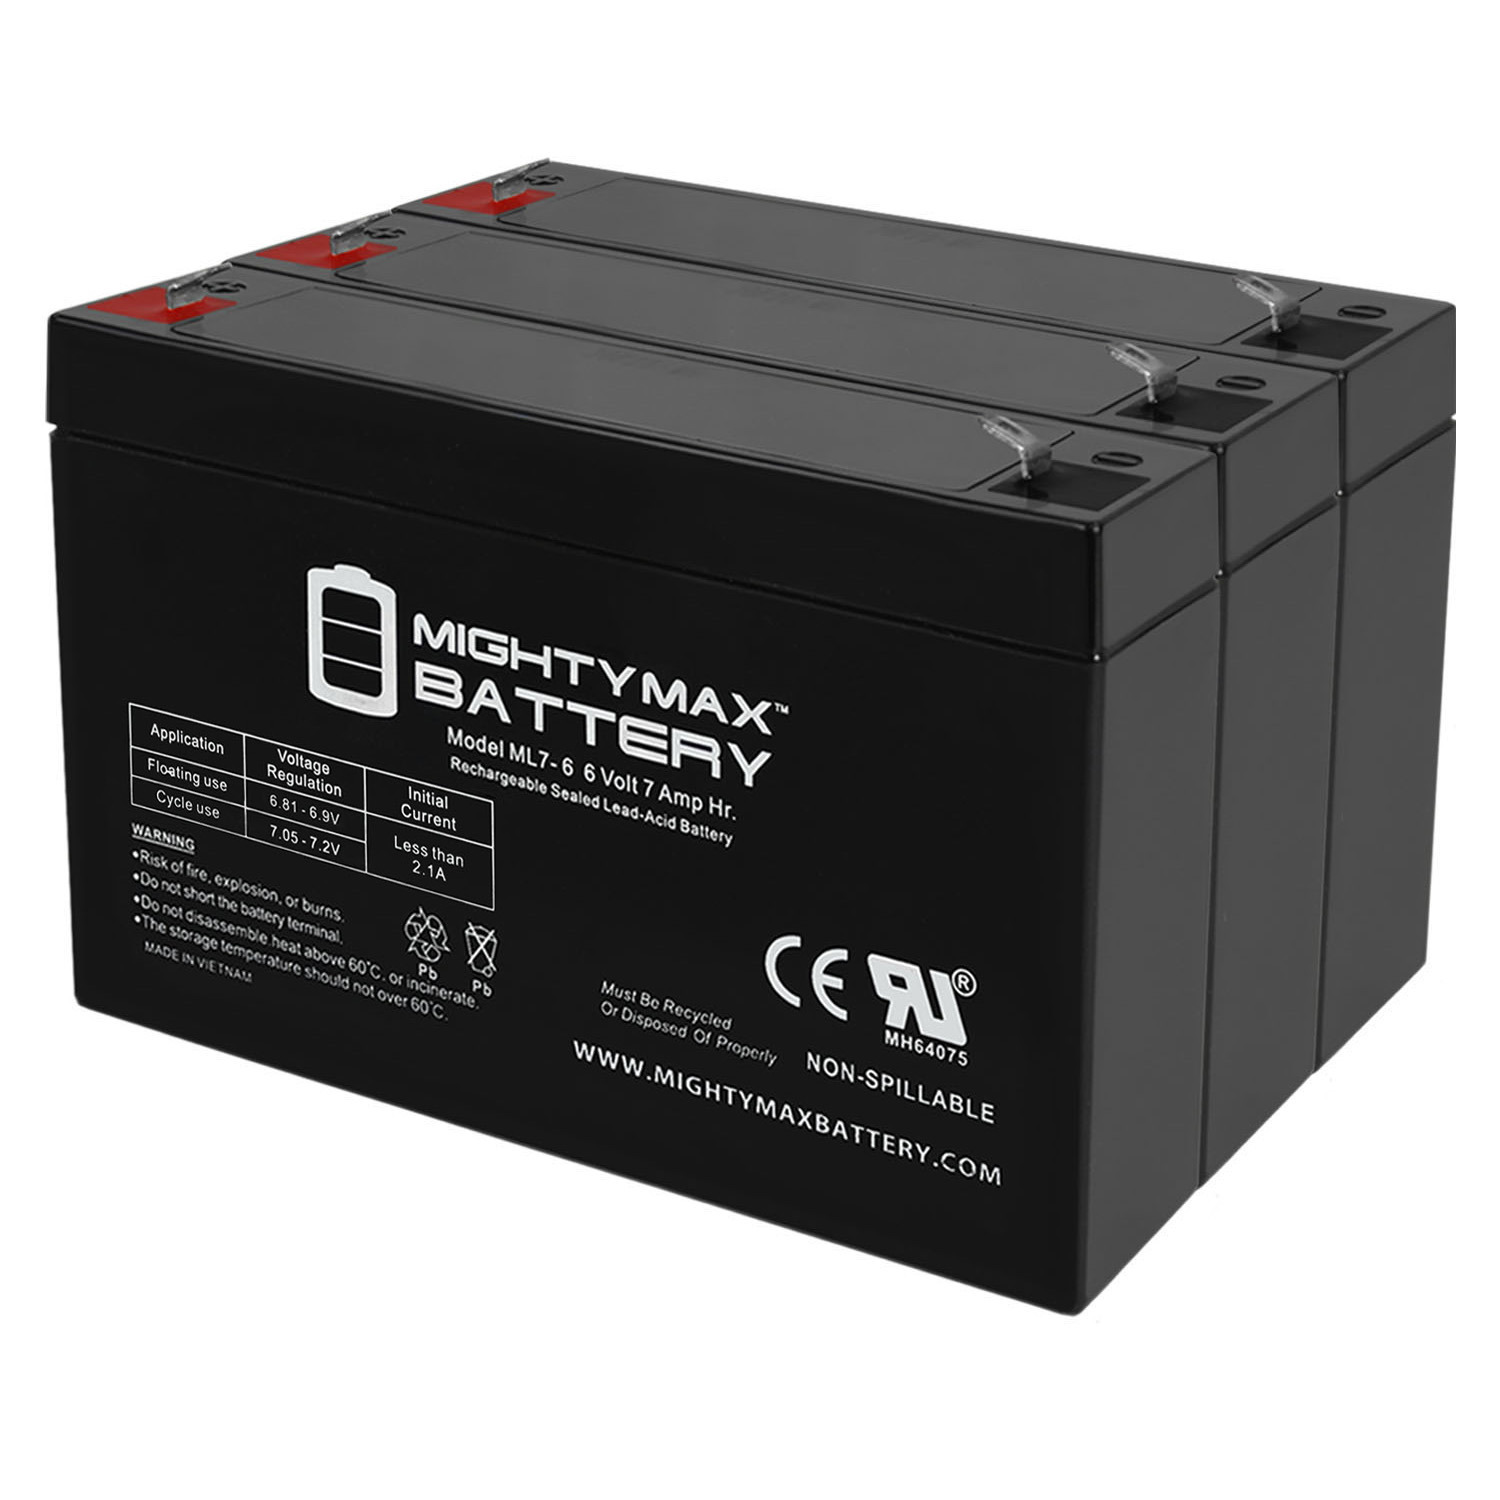 6V 7Ah SLA Replacement Battery for Emergi-Lite 2Fl1 - 3 Pack